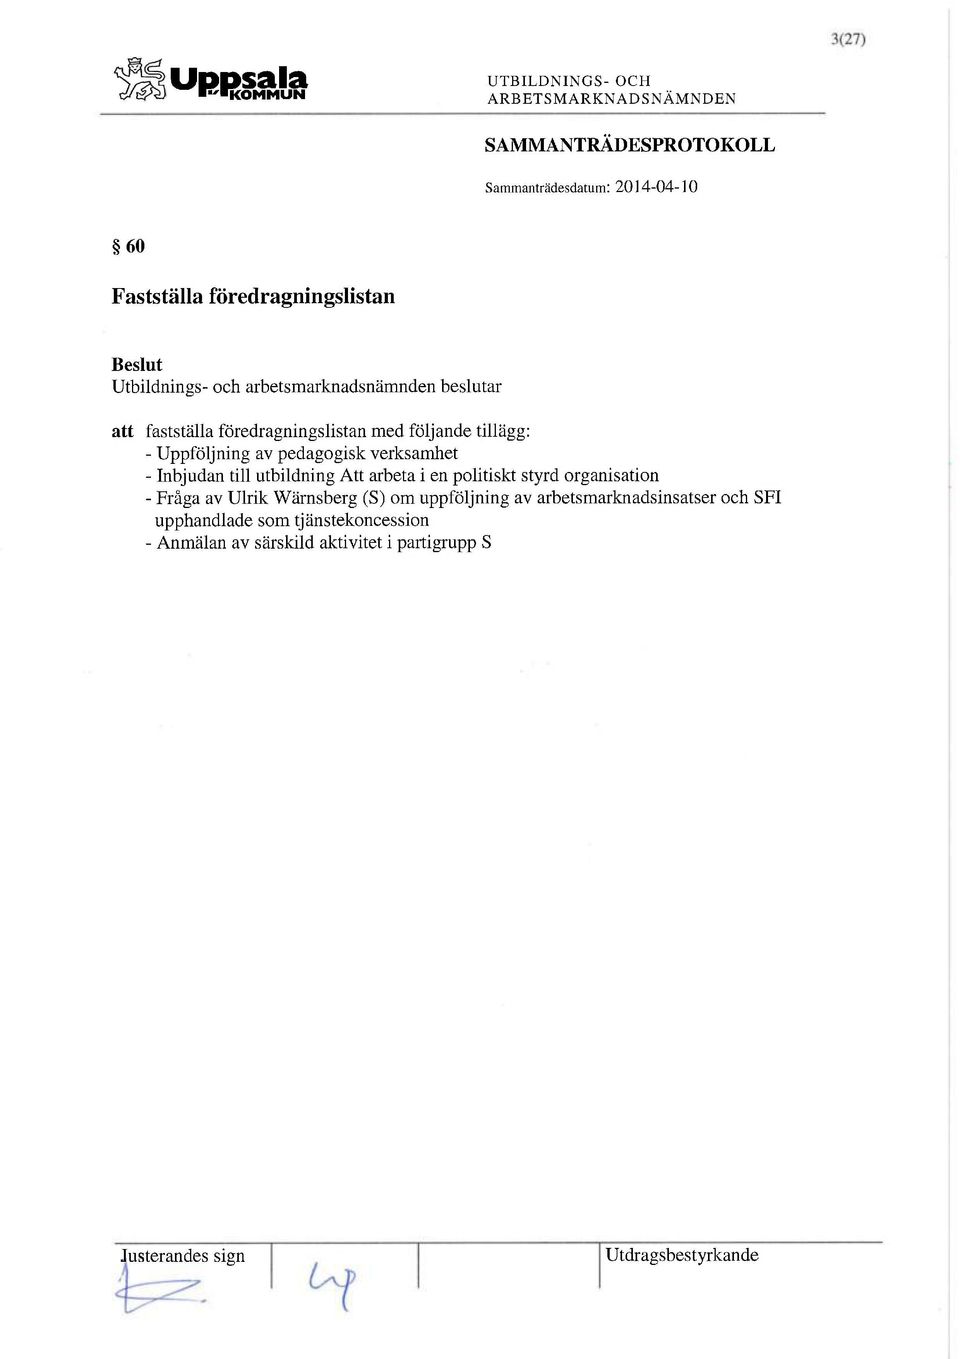 styrd organisation - Fråga av Ulrik Wärnsberg (S) om uppföljning av arbetsmarknadsinsatser och